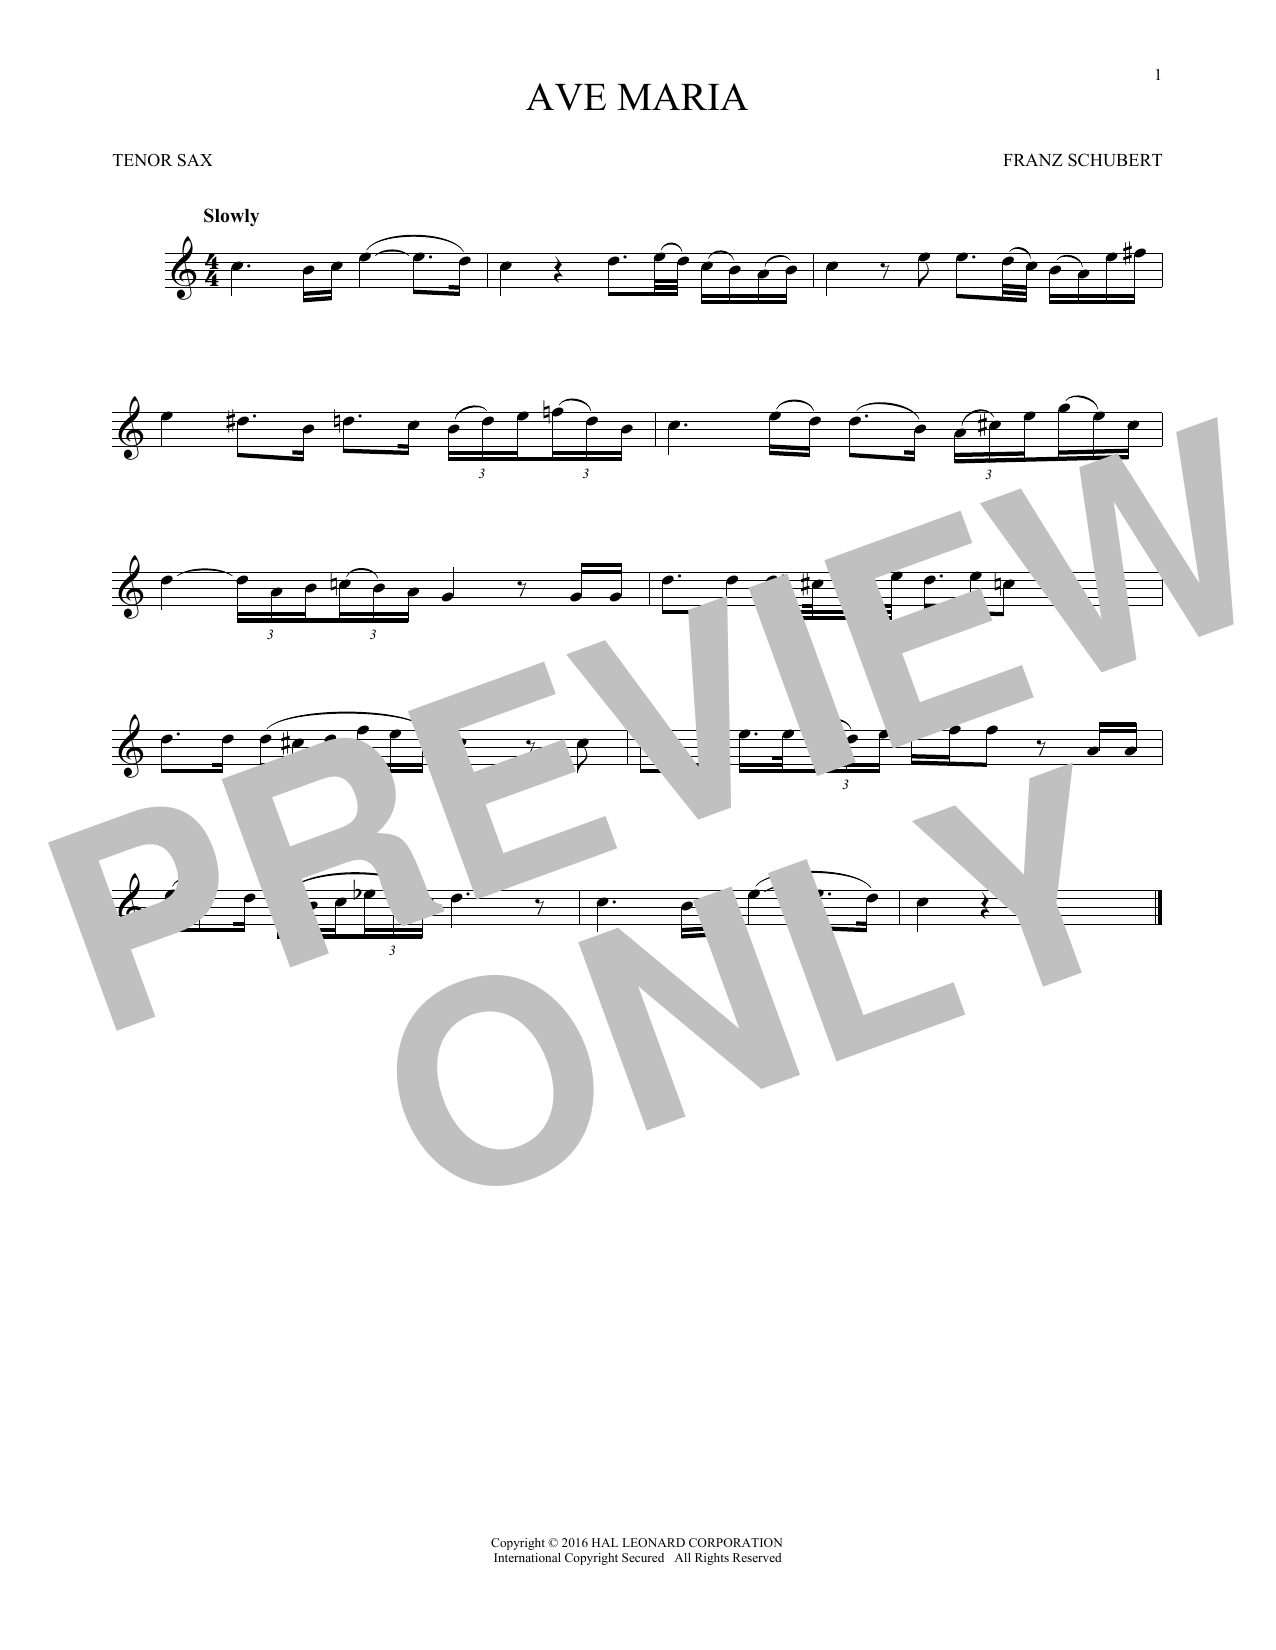 Ave Maria, Op. 52, No. 6 (Tenor Sax Solo) von Franz Schubert